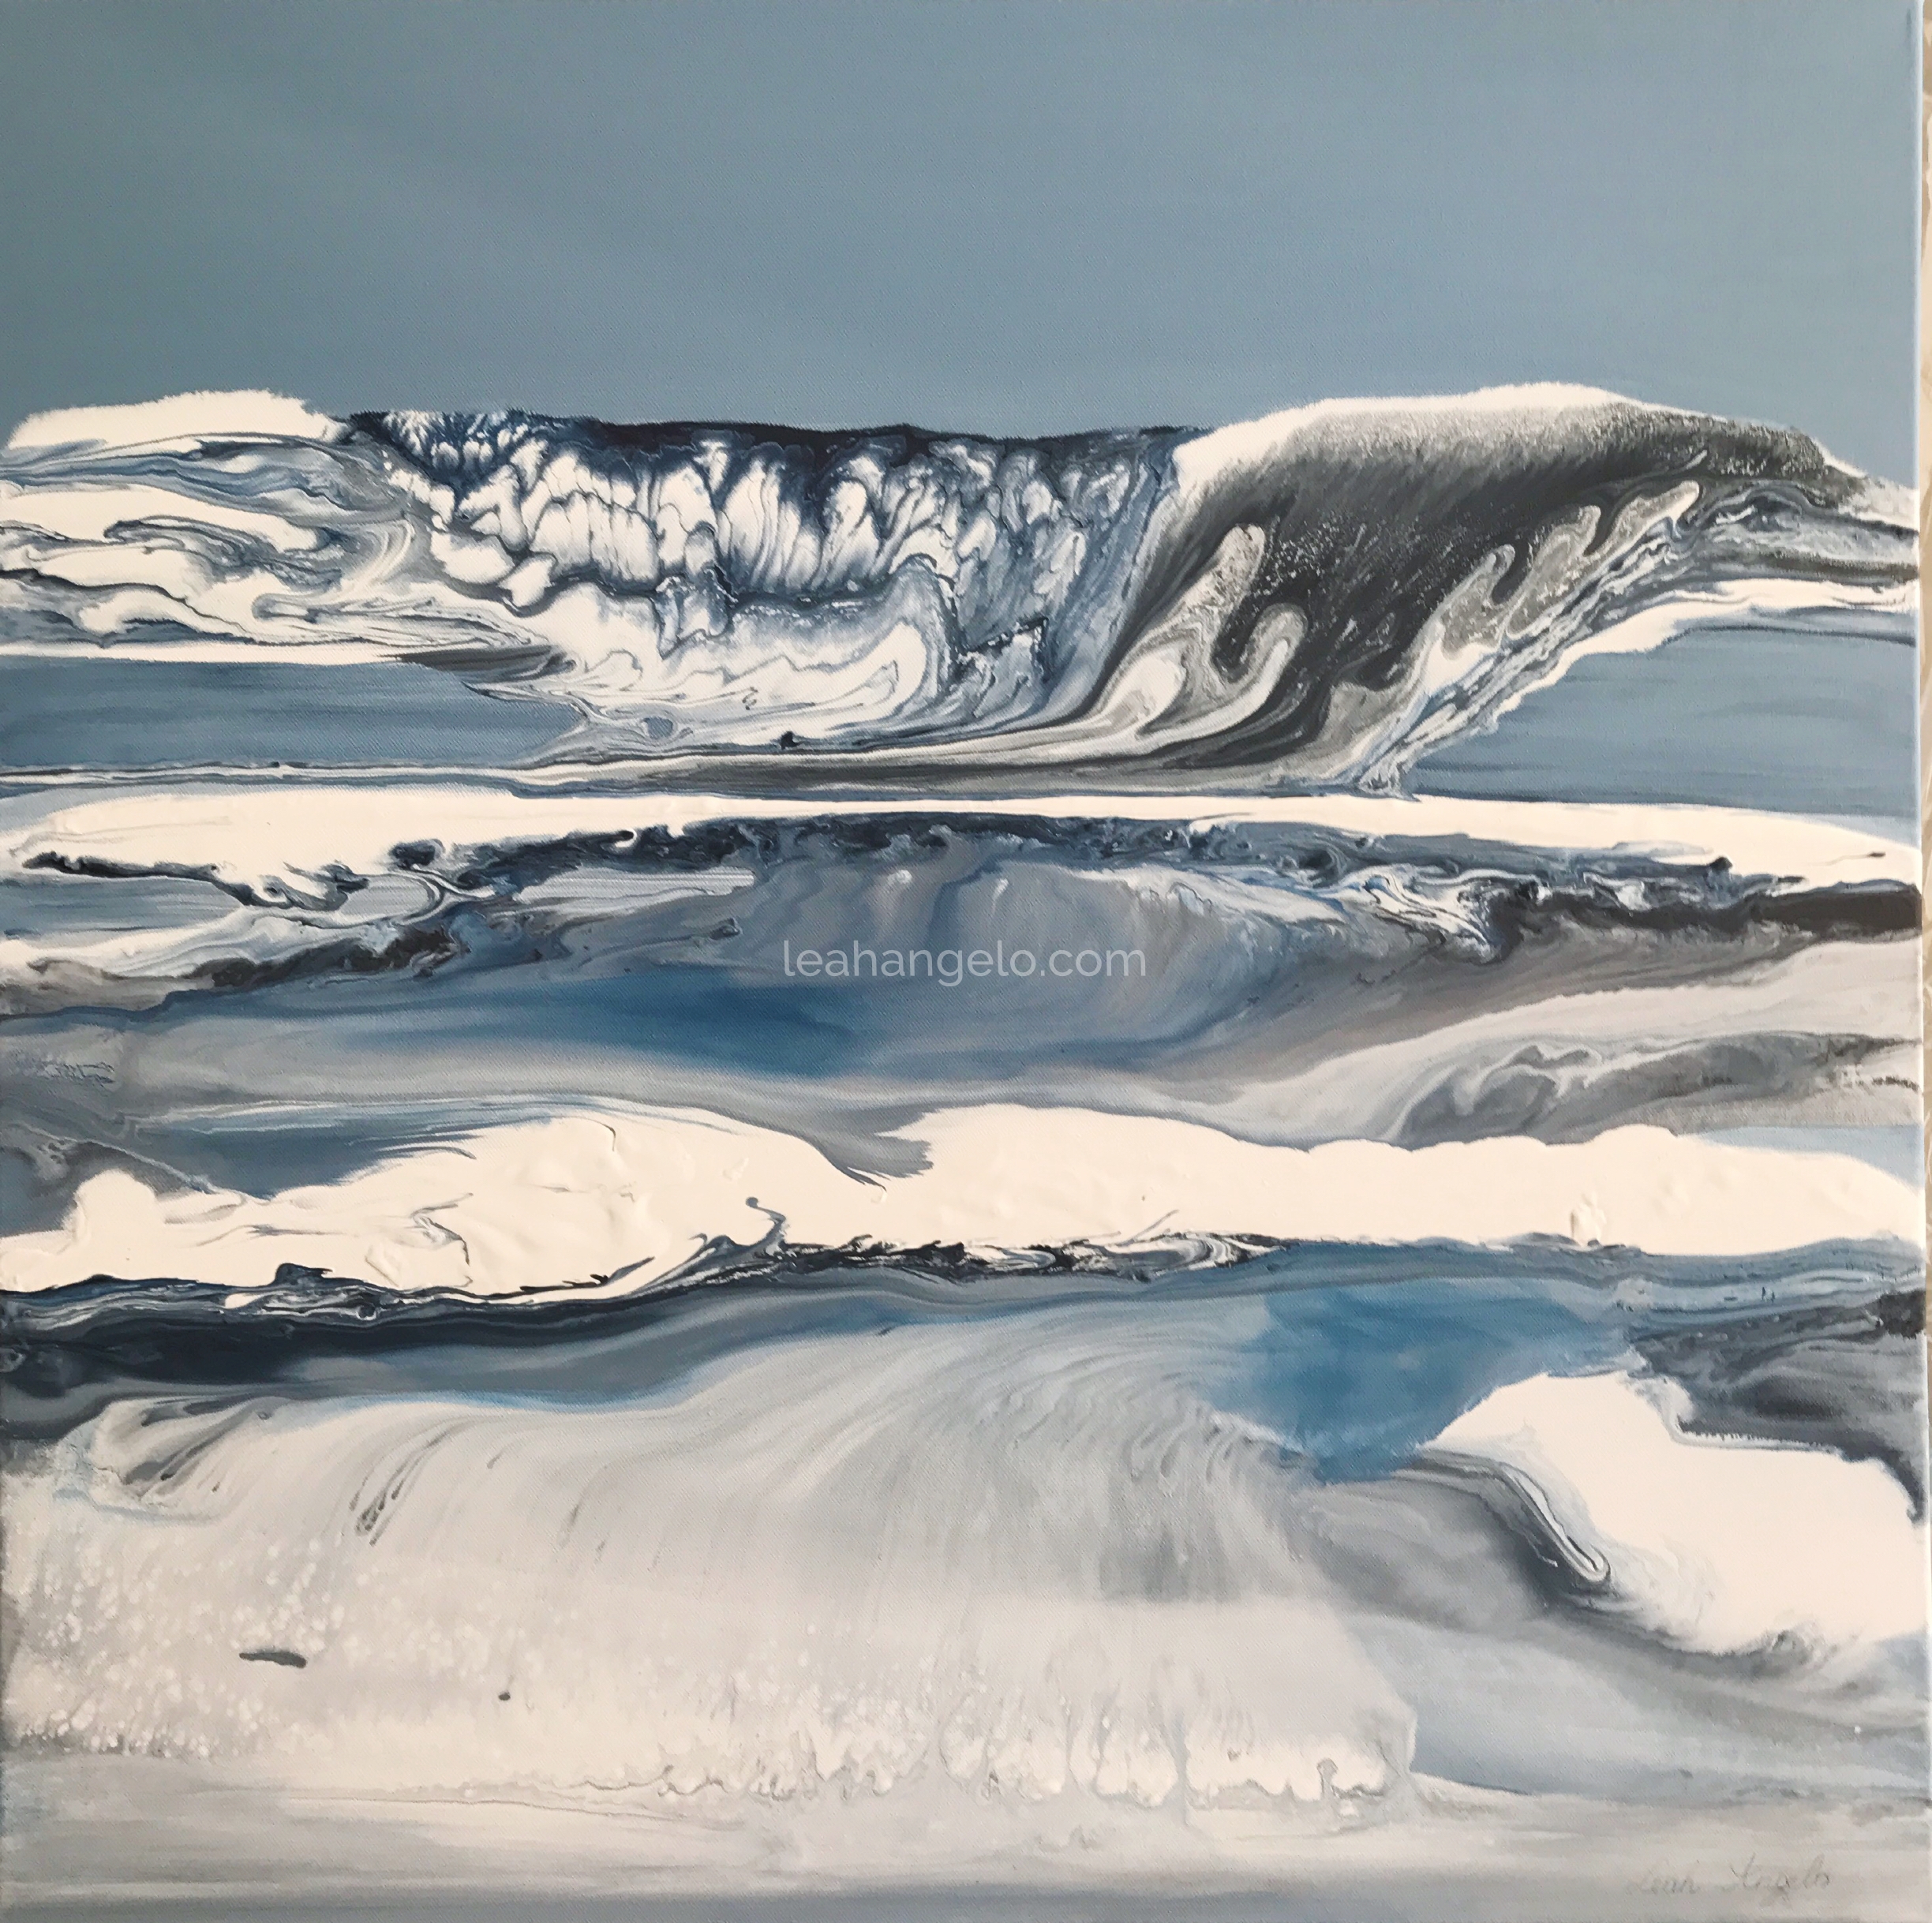 LEAH ANGELO OCEAN WORLD 004, Acrylics on Canvas, 80 x 80 cm, Leah Angelo